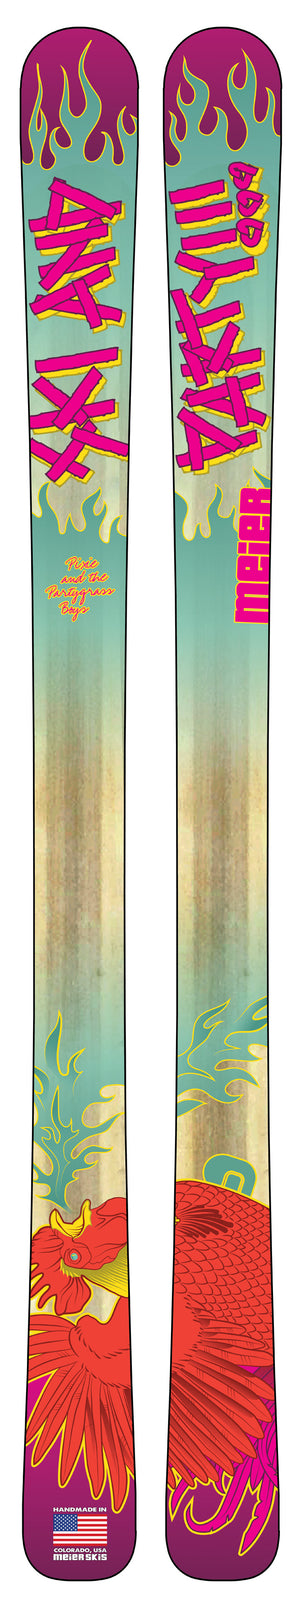 Partygrass Custom Skis